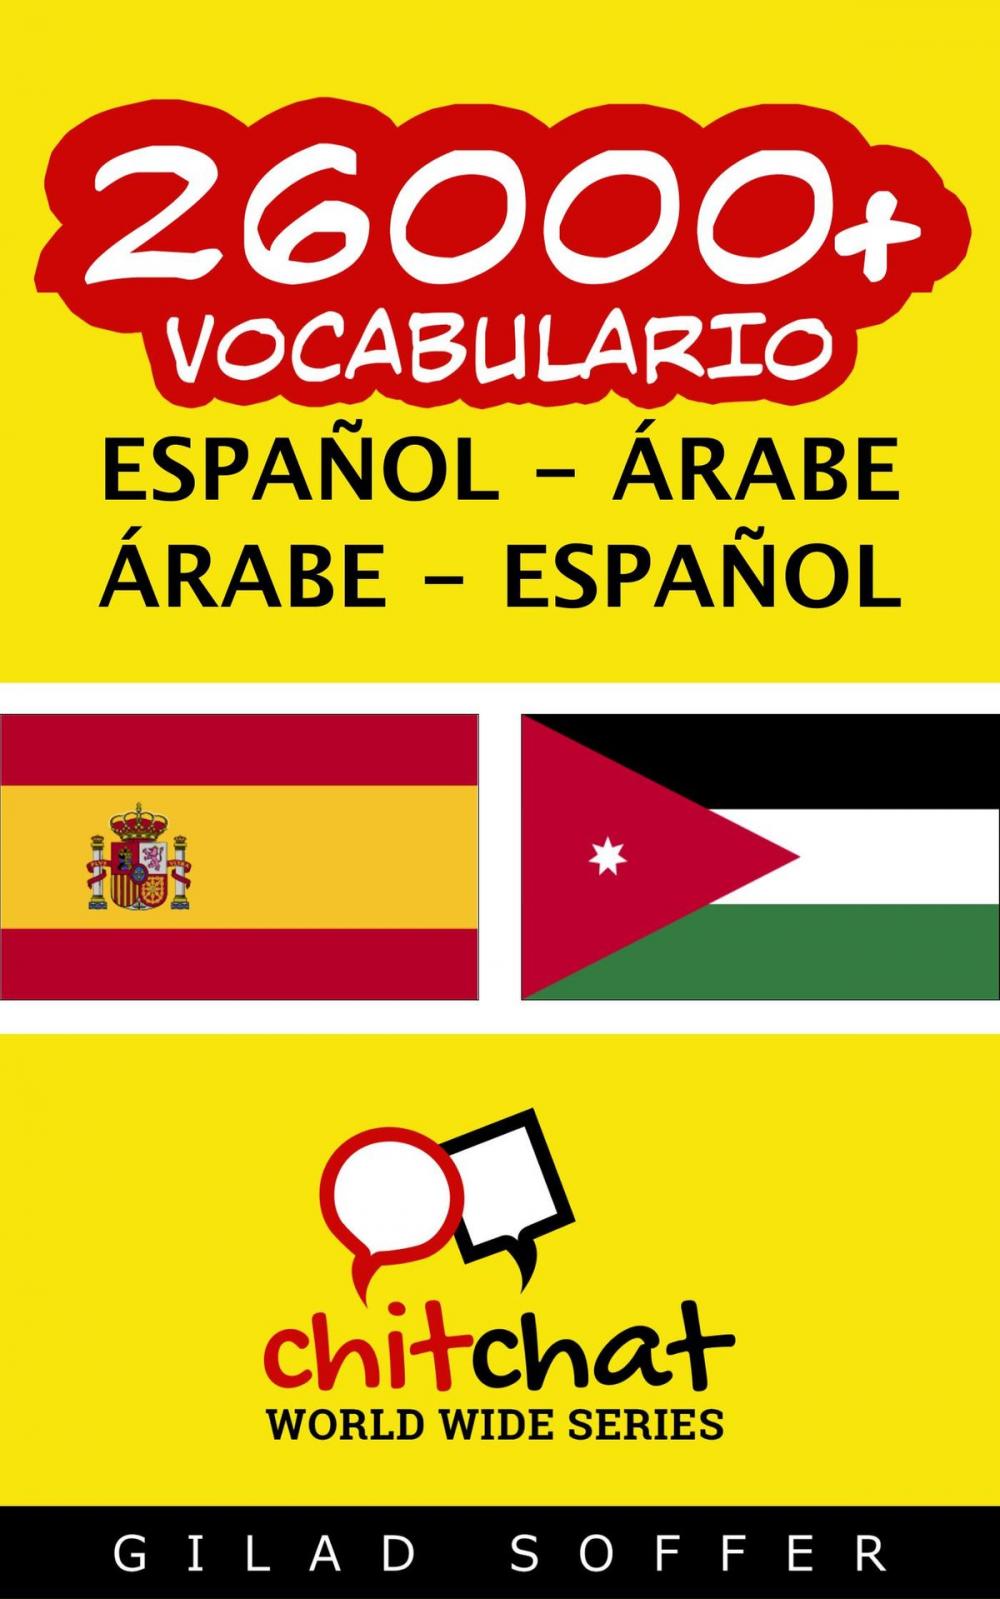 Big bigCover of 26000+ vocabulario español - árabe